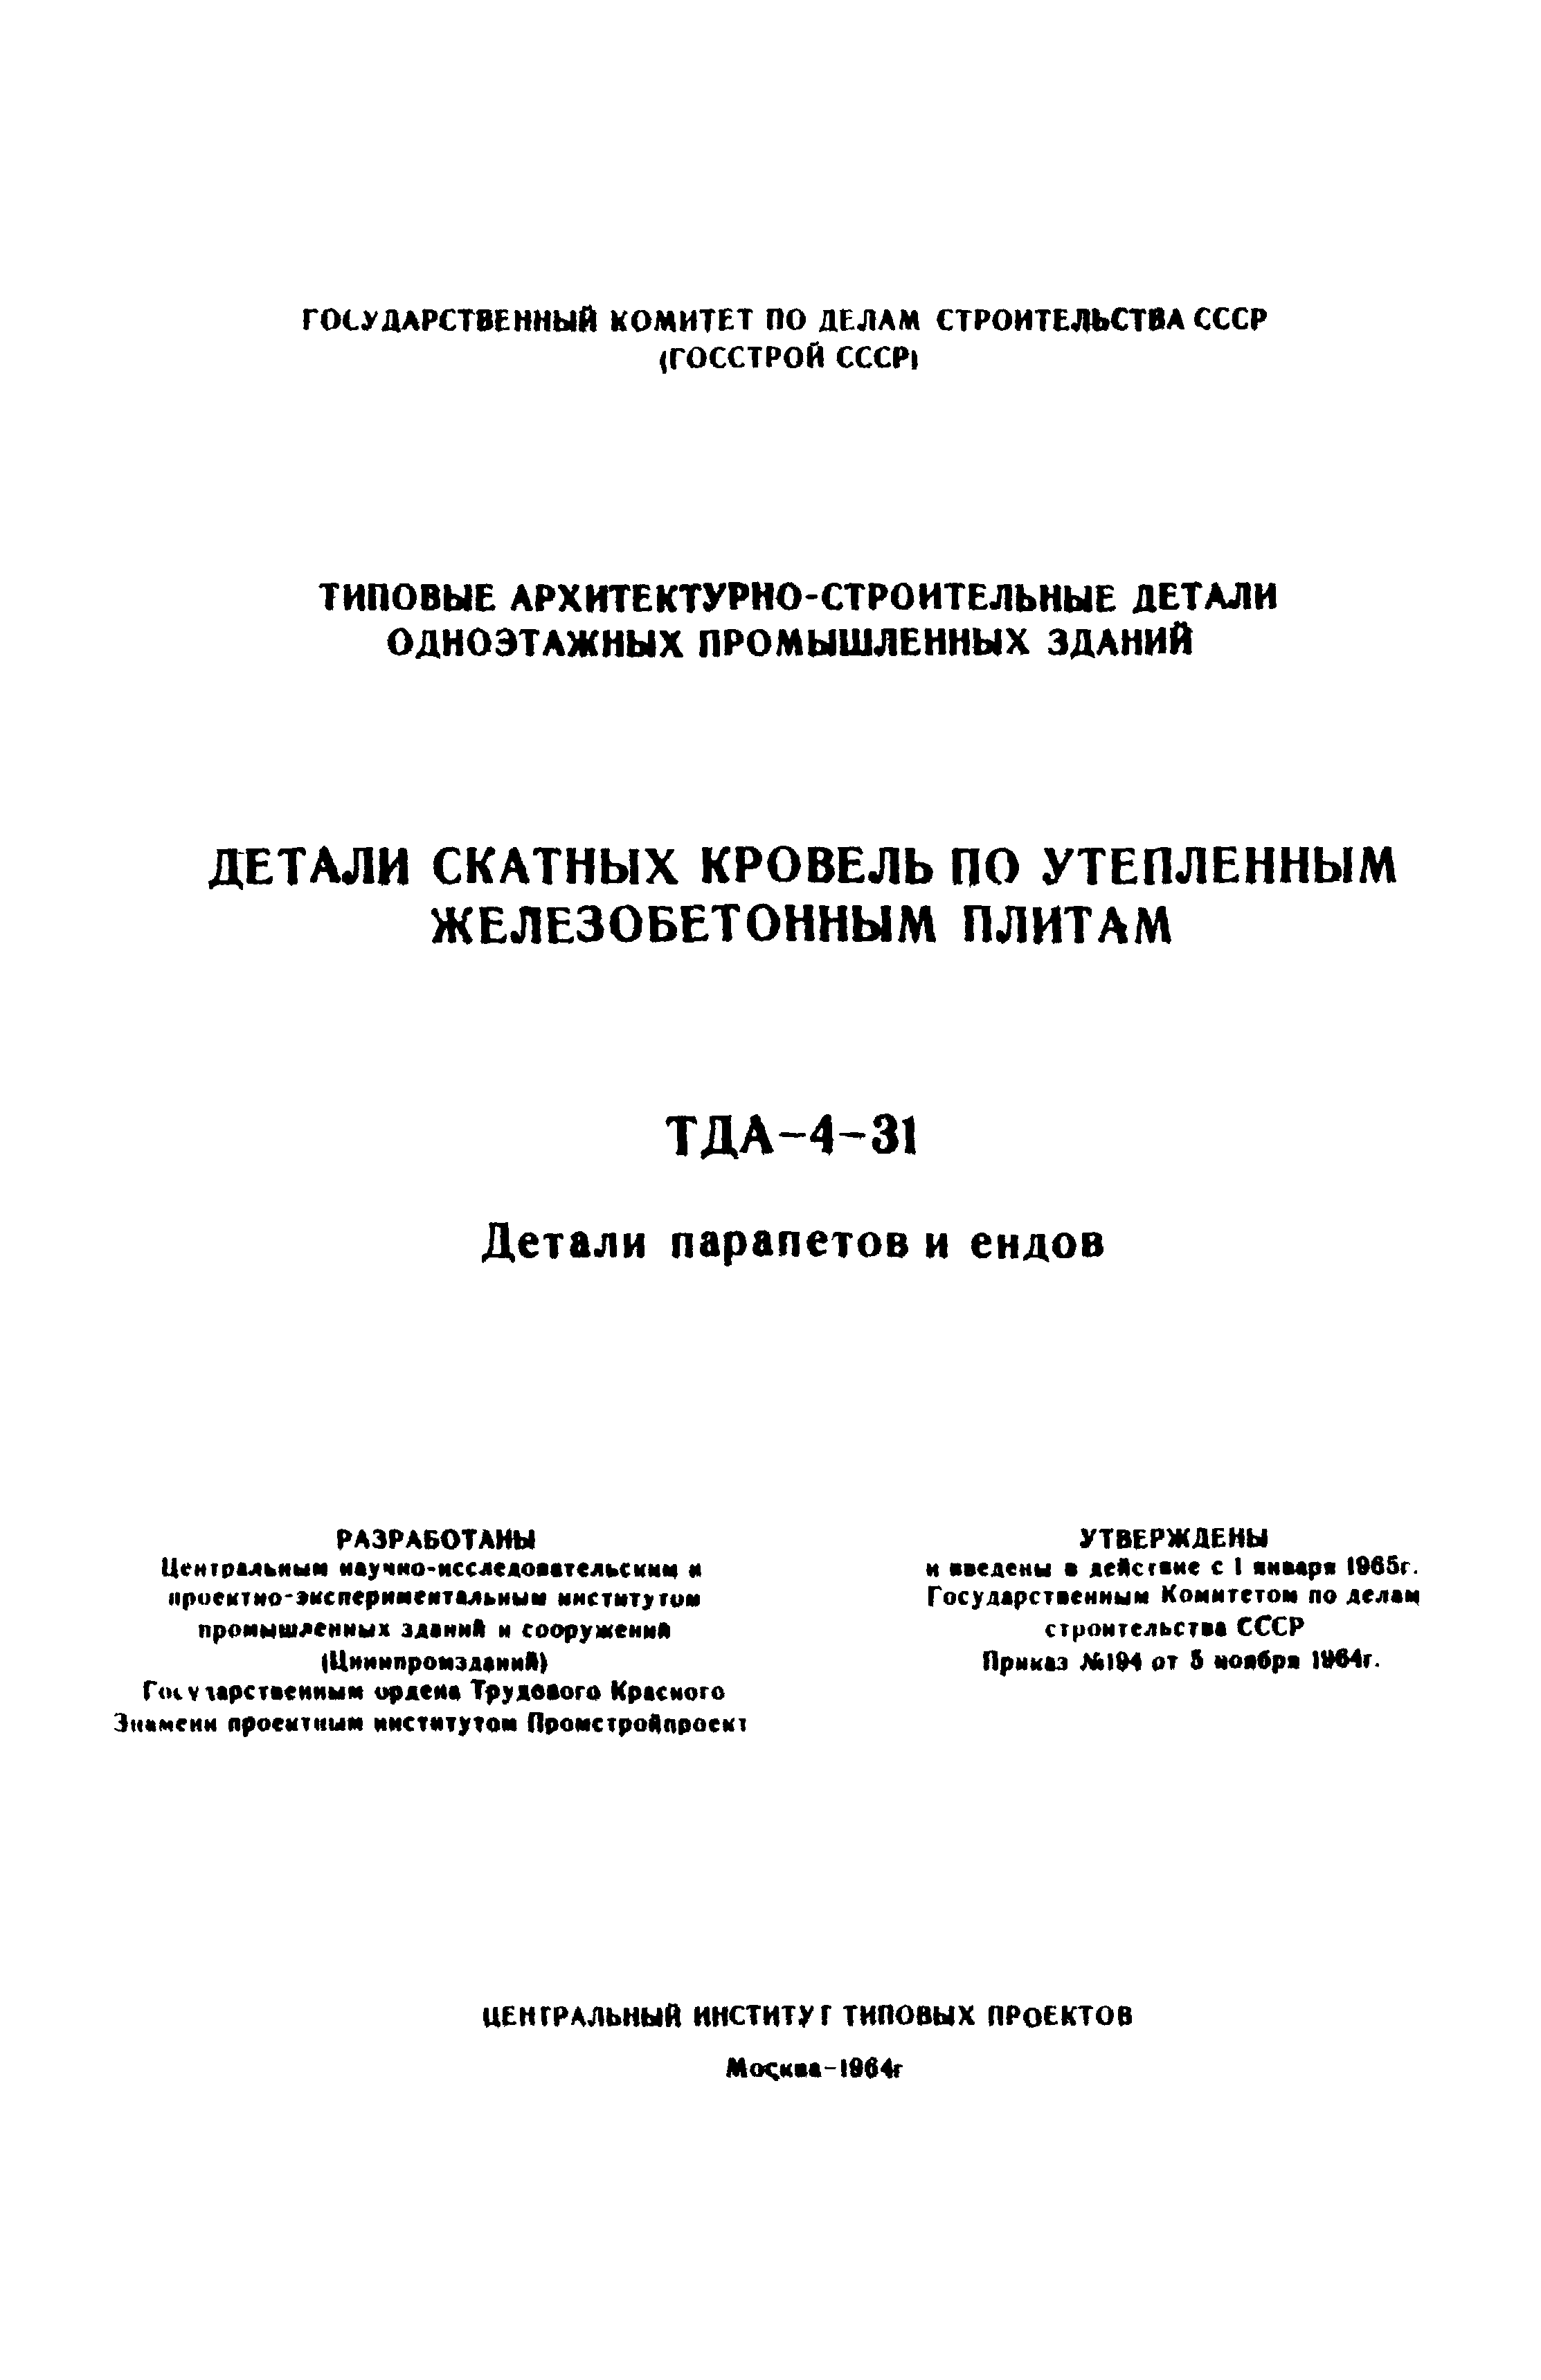 ТДА-4-31